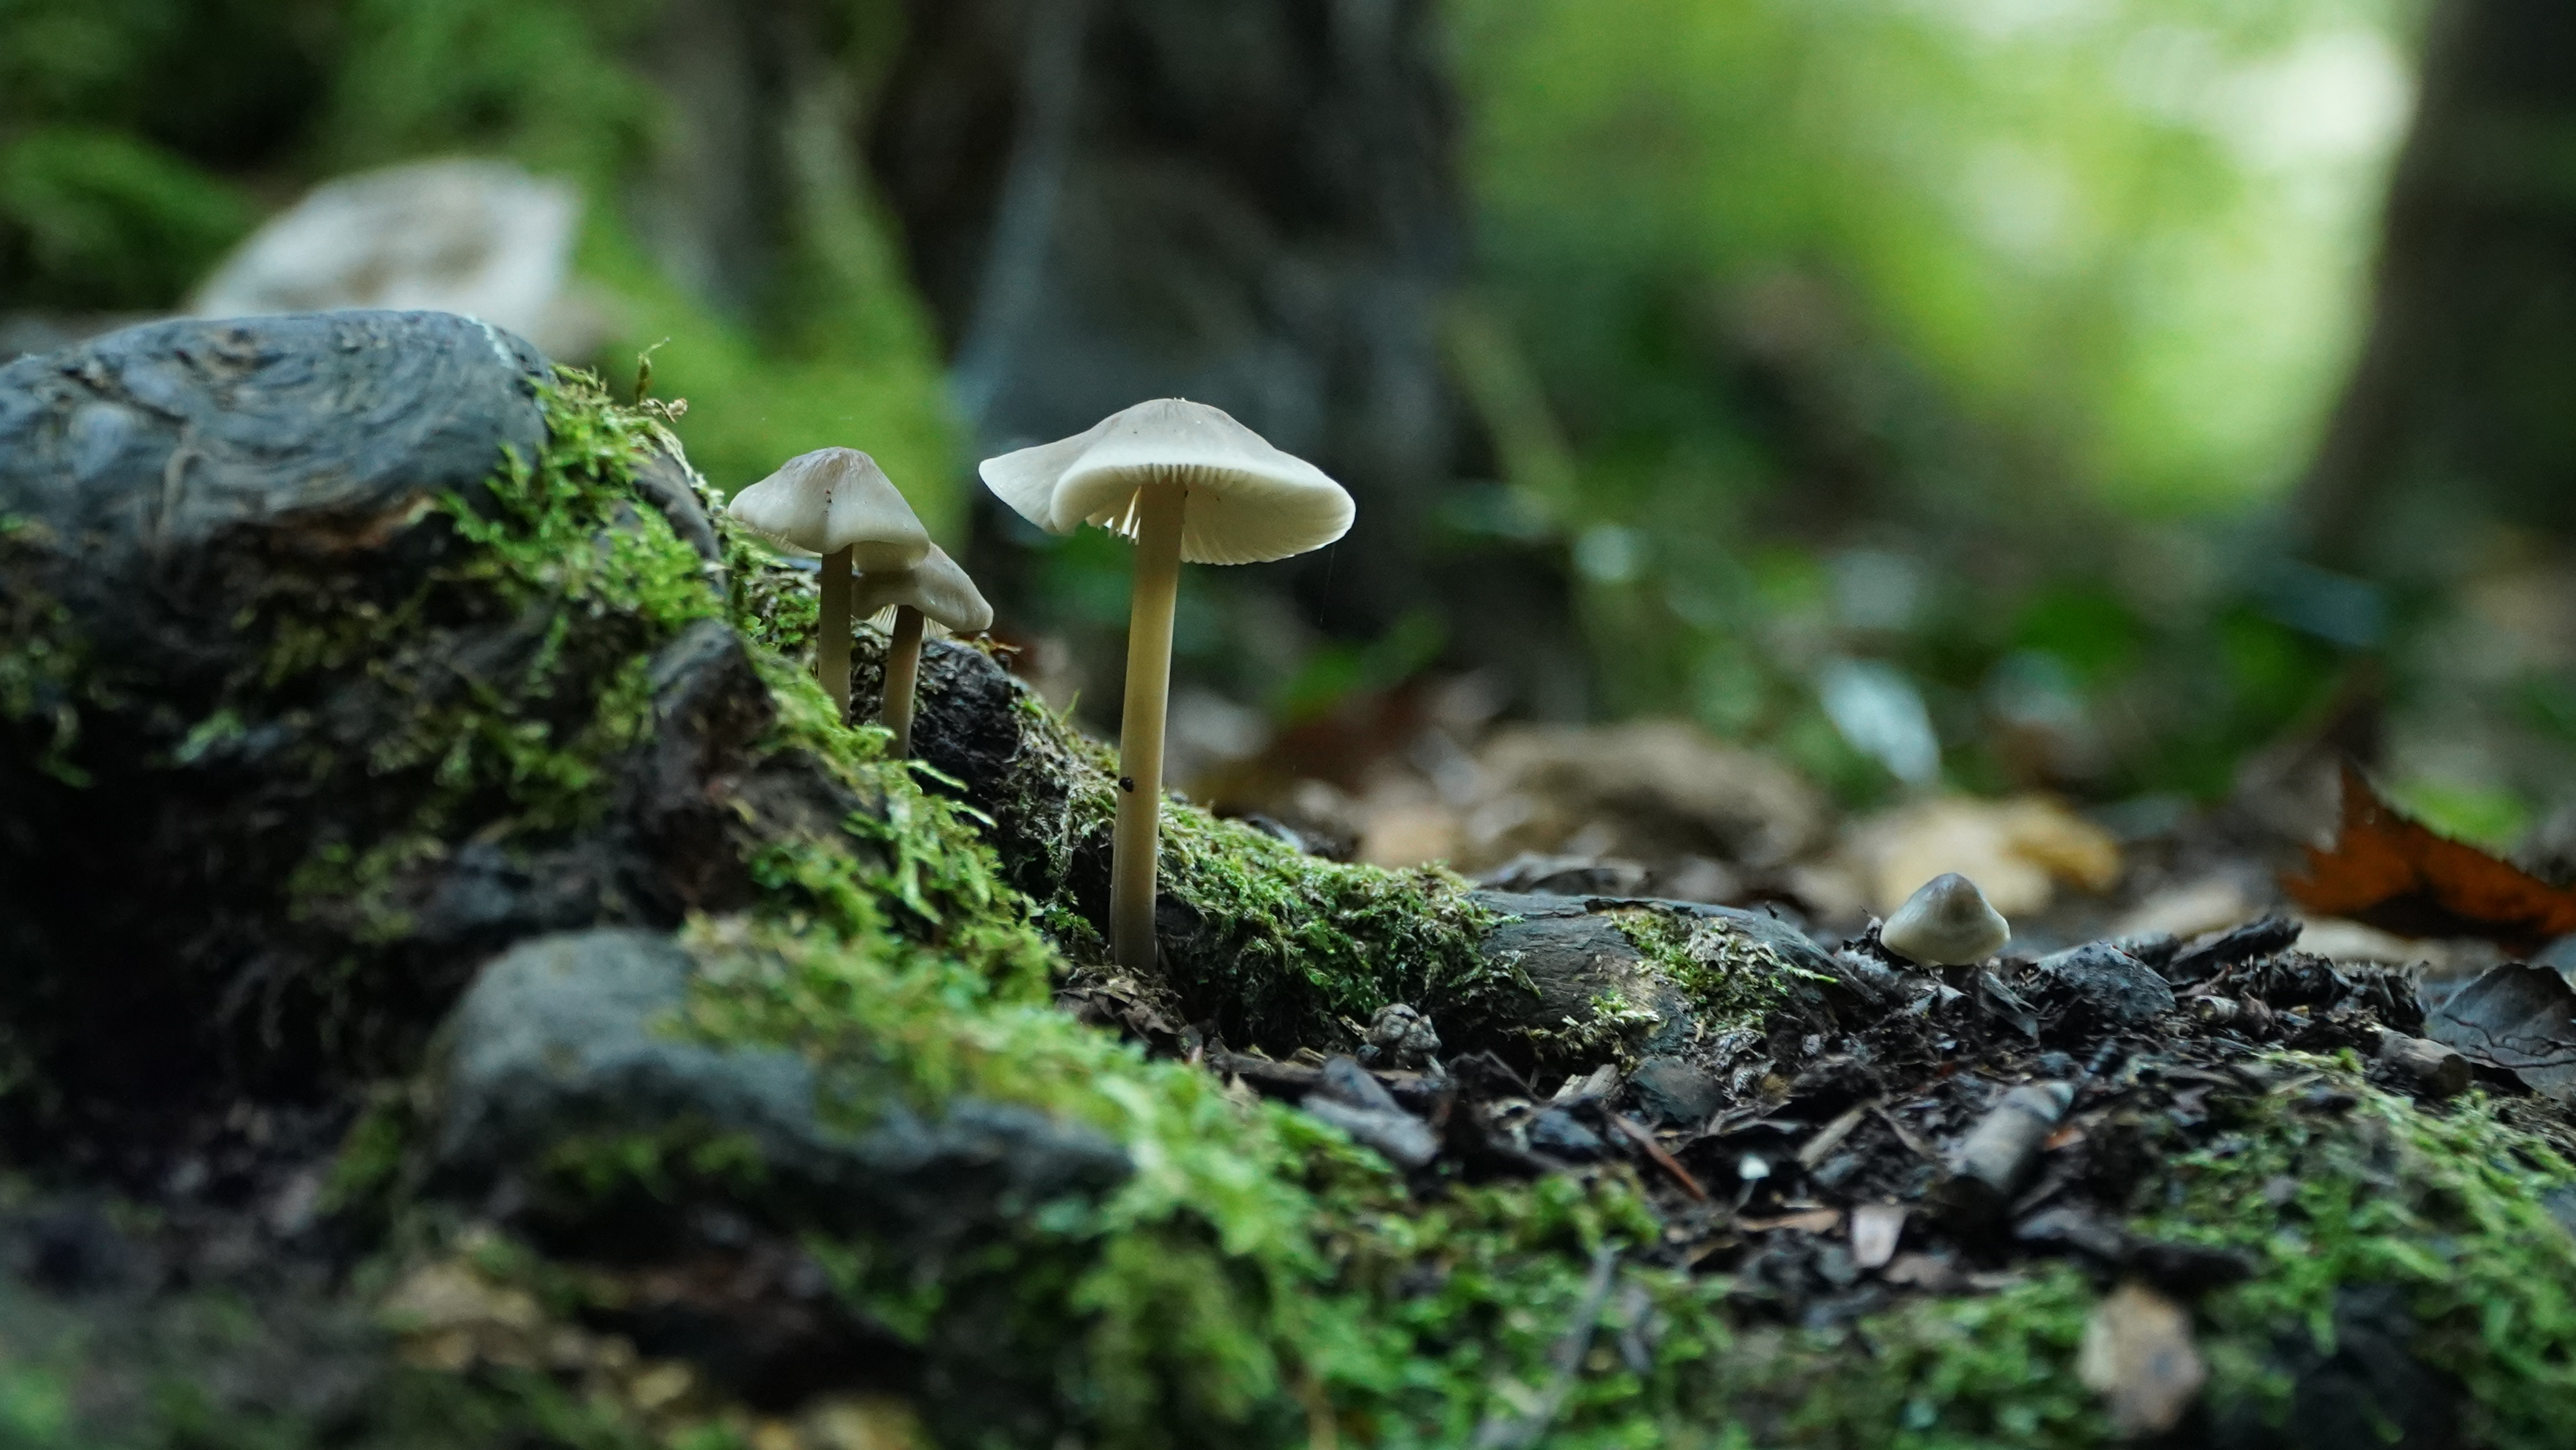 Kalandos Dunakanyar-Milotai Richárd a gombákat is szereti megörökíteni